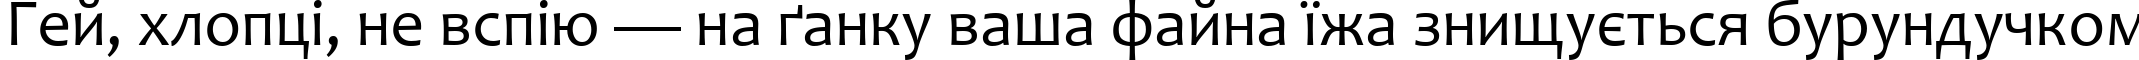 Пример написания шрифтом Candara текста на украинском